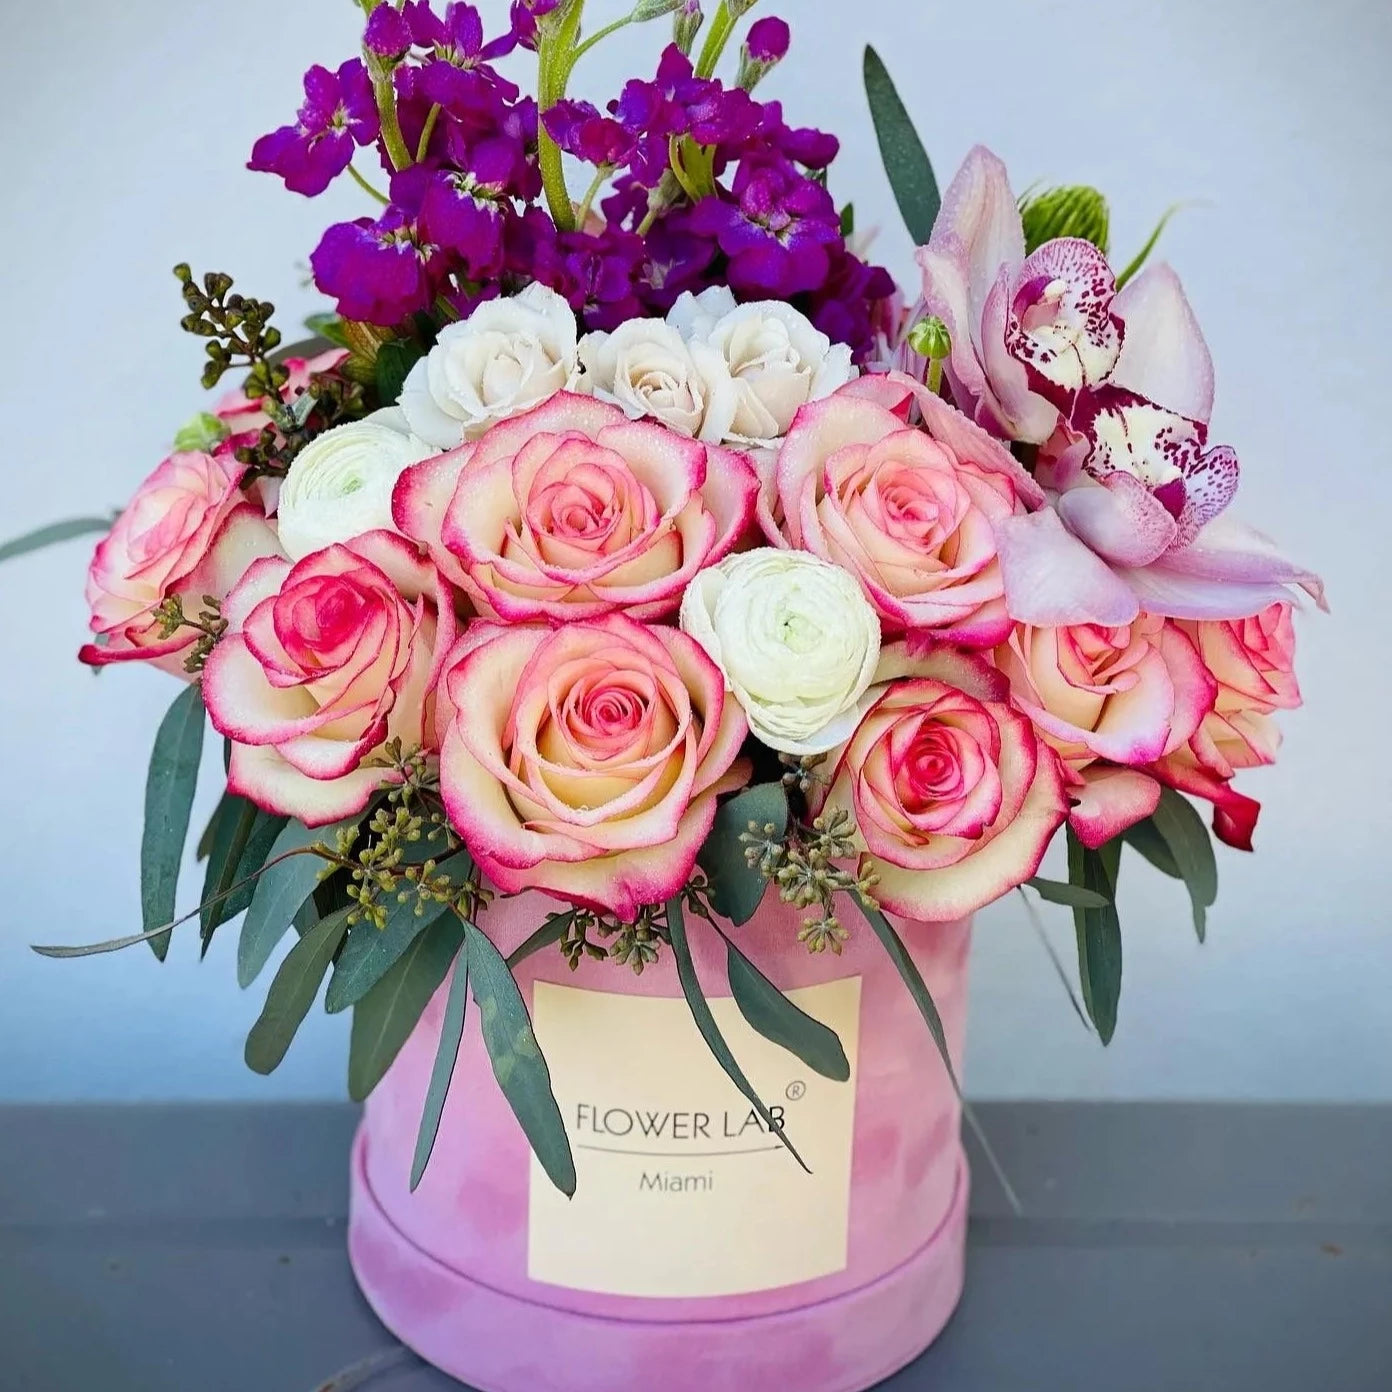 Perfecto Arrangement with Bicolor Roses Mini Roses, Cymbidium Orchids, Stock, Eucalyptus